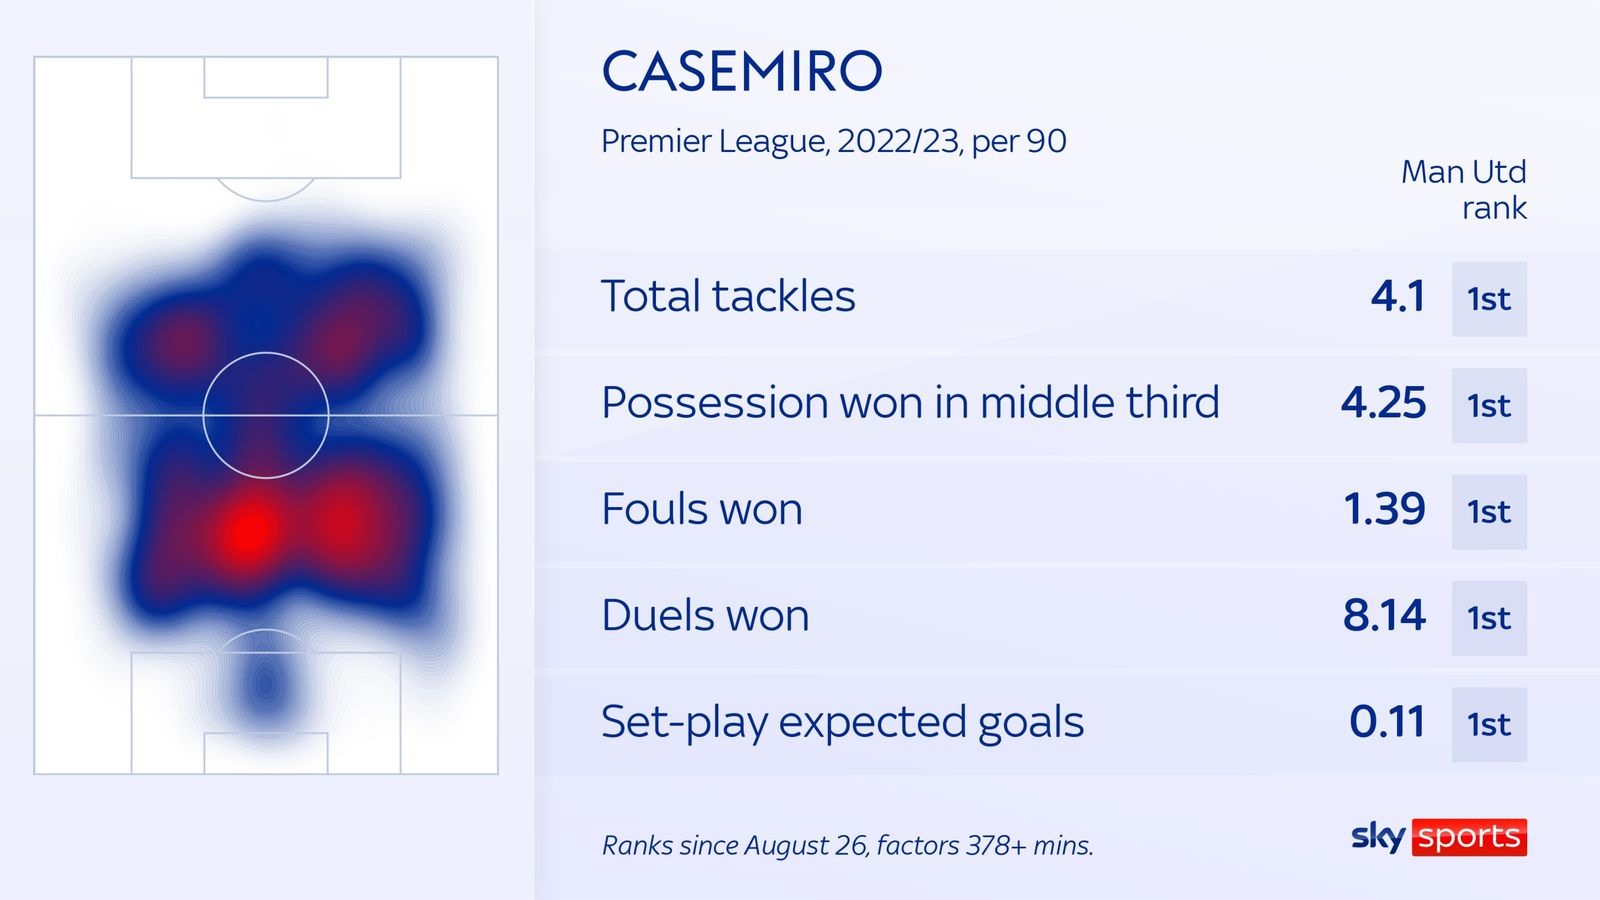 Bản đồ nhiệt và các chỉ số thiên về phòng ngự đáng nể của Casemiro. Ảnh thiết kế: Sky Sports